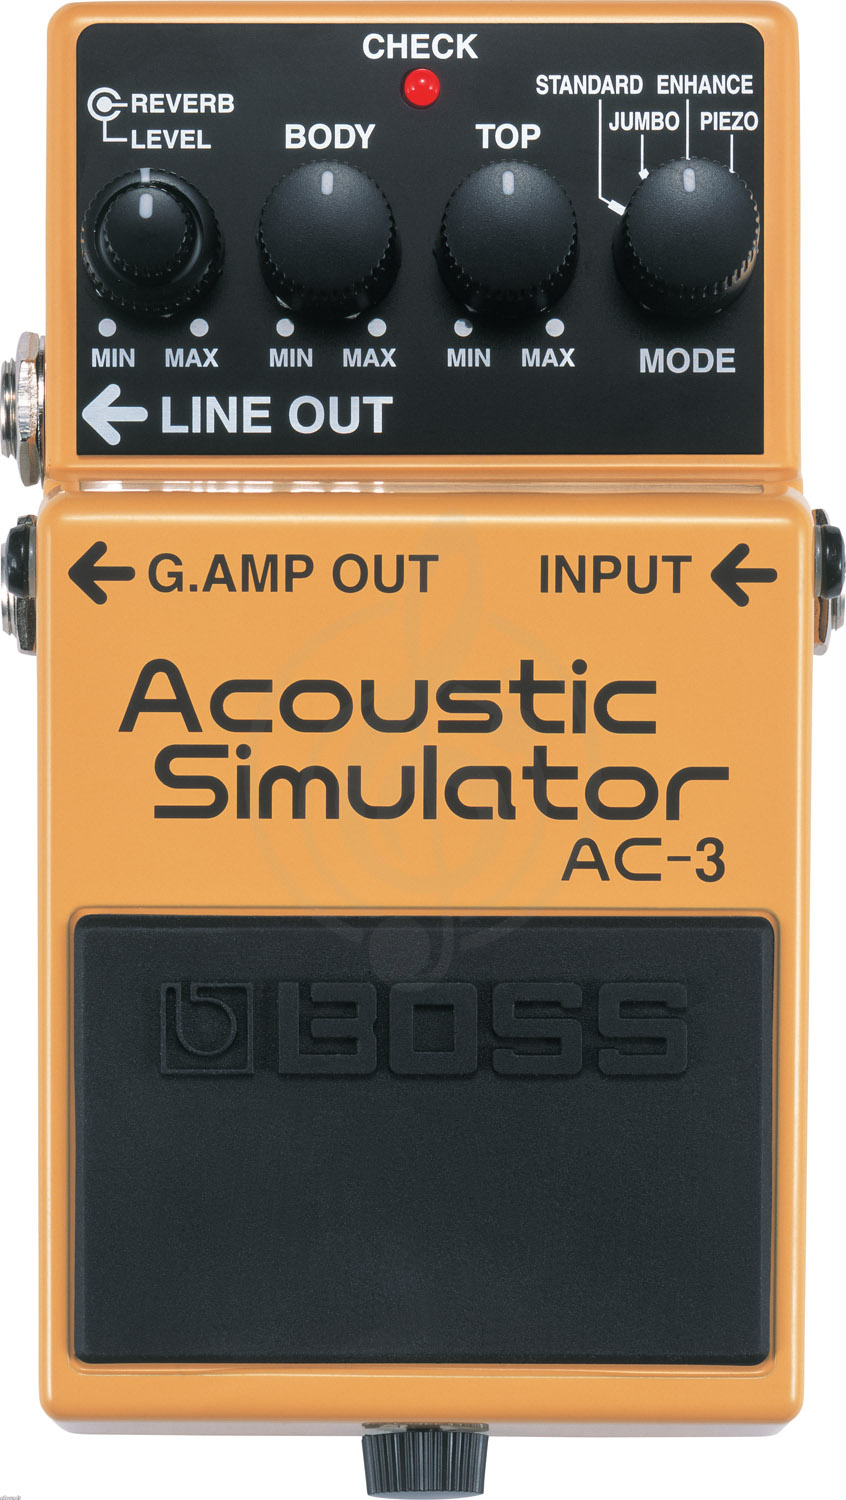 Эмулятор Эмуляторы Boss Boss AC-3 гитарная педаль Эмулятор Акустики AC-3 - фото 2